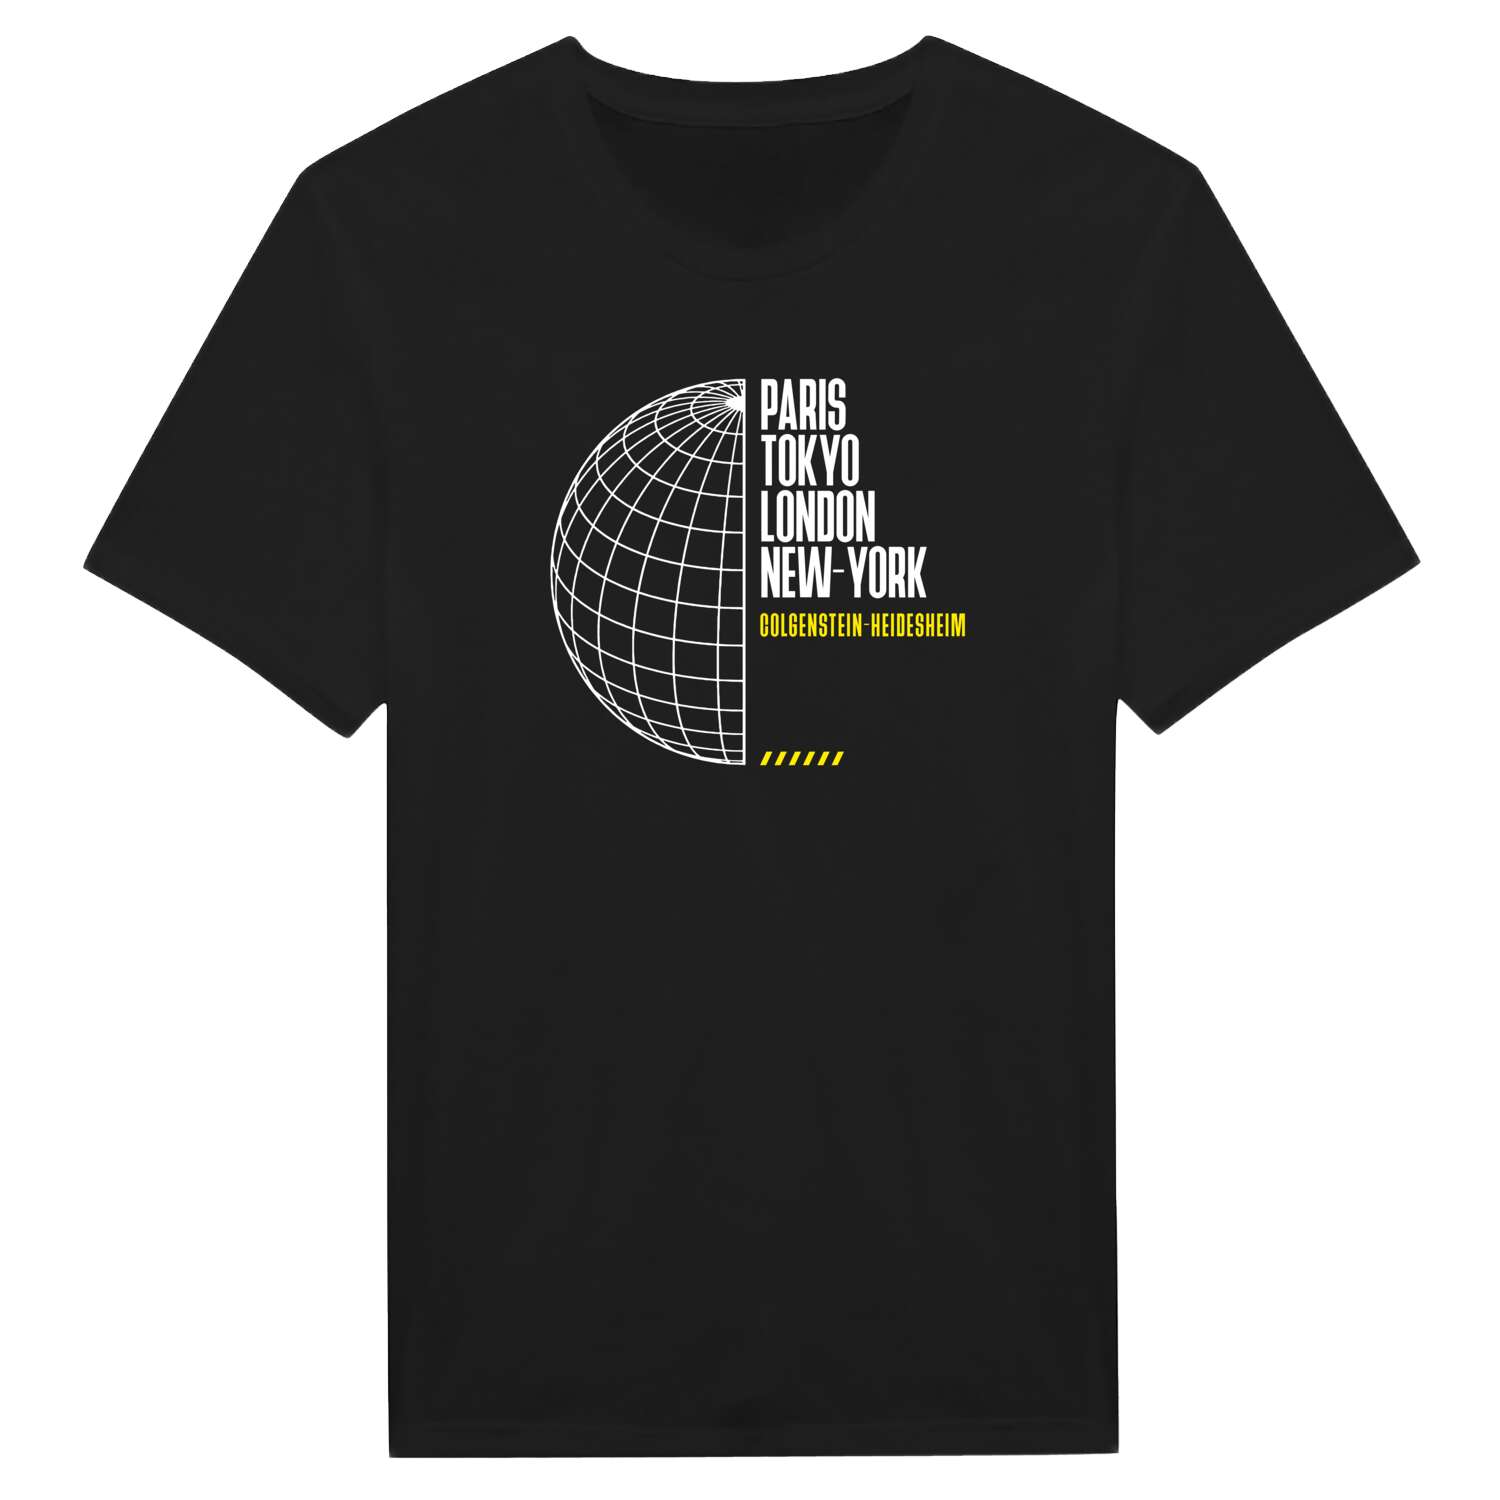 Colgenstein-Heidesheim T-Shirt »Paris Tokyo London«